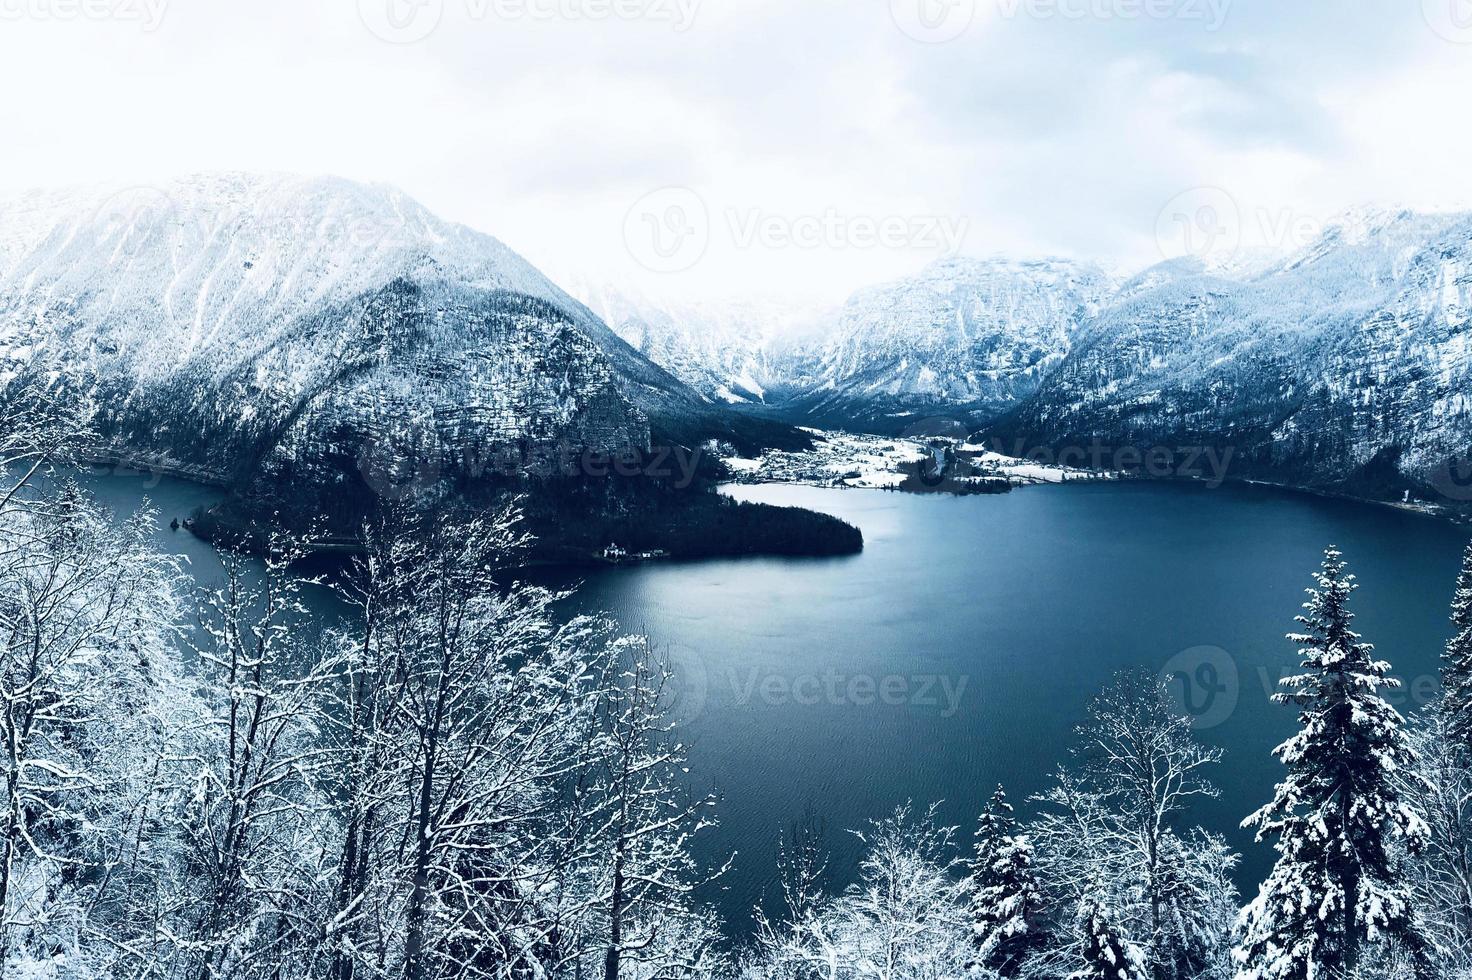 paisaje de hallstatt invierno nieve montaña paisaje valle y lago a través del bosque en upland valle conduce a la antigua mina de sal de hallstatt, austria vertical foto